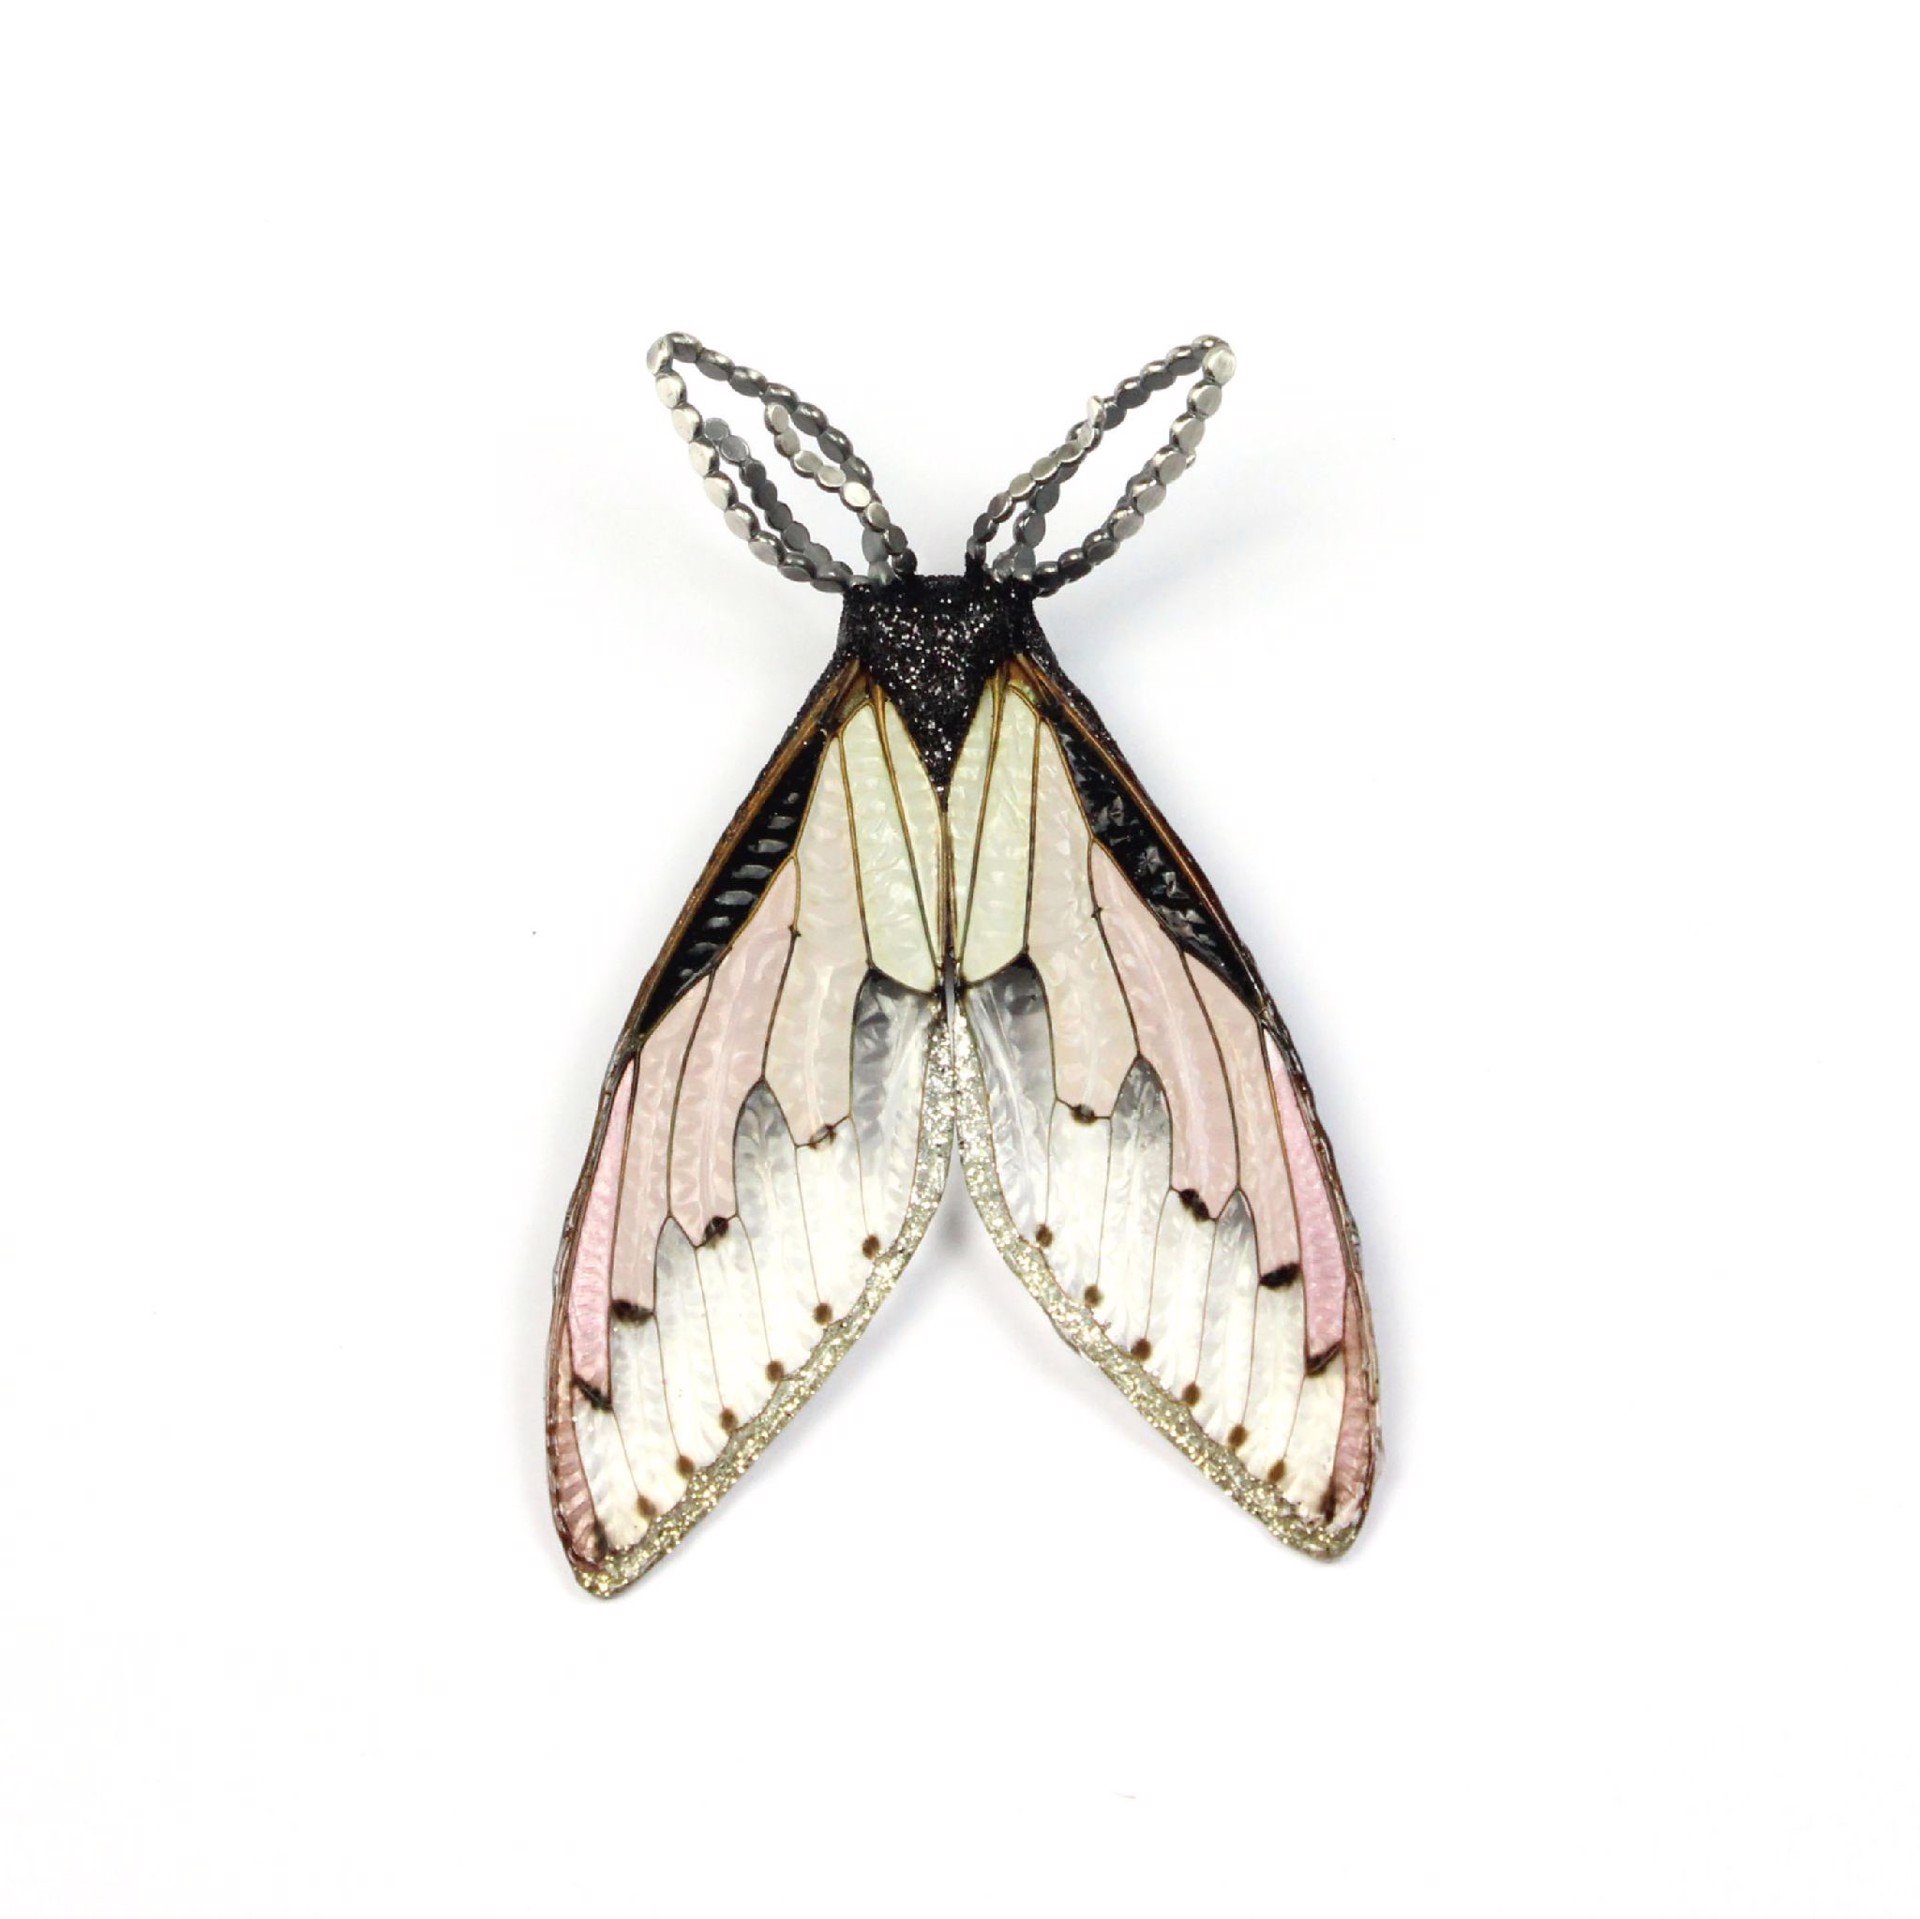 Blush Cicada Brooch by Märta Mattsson